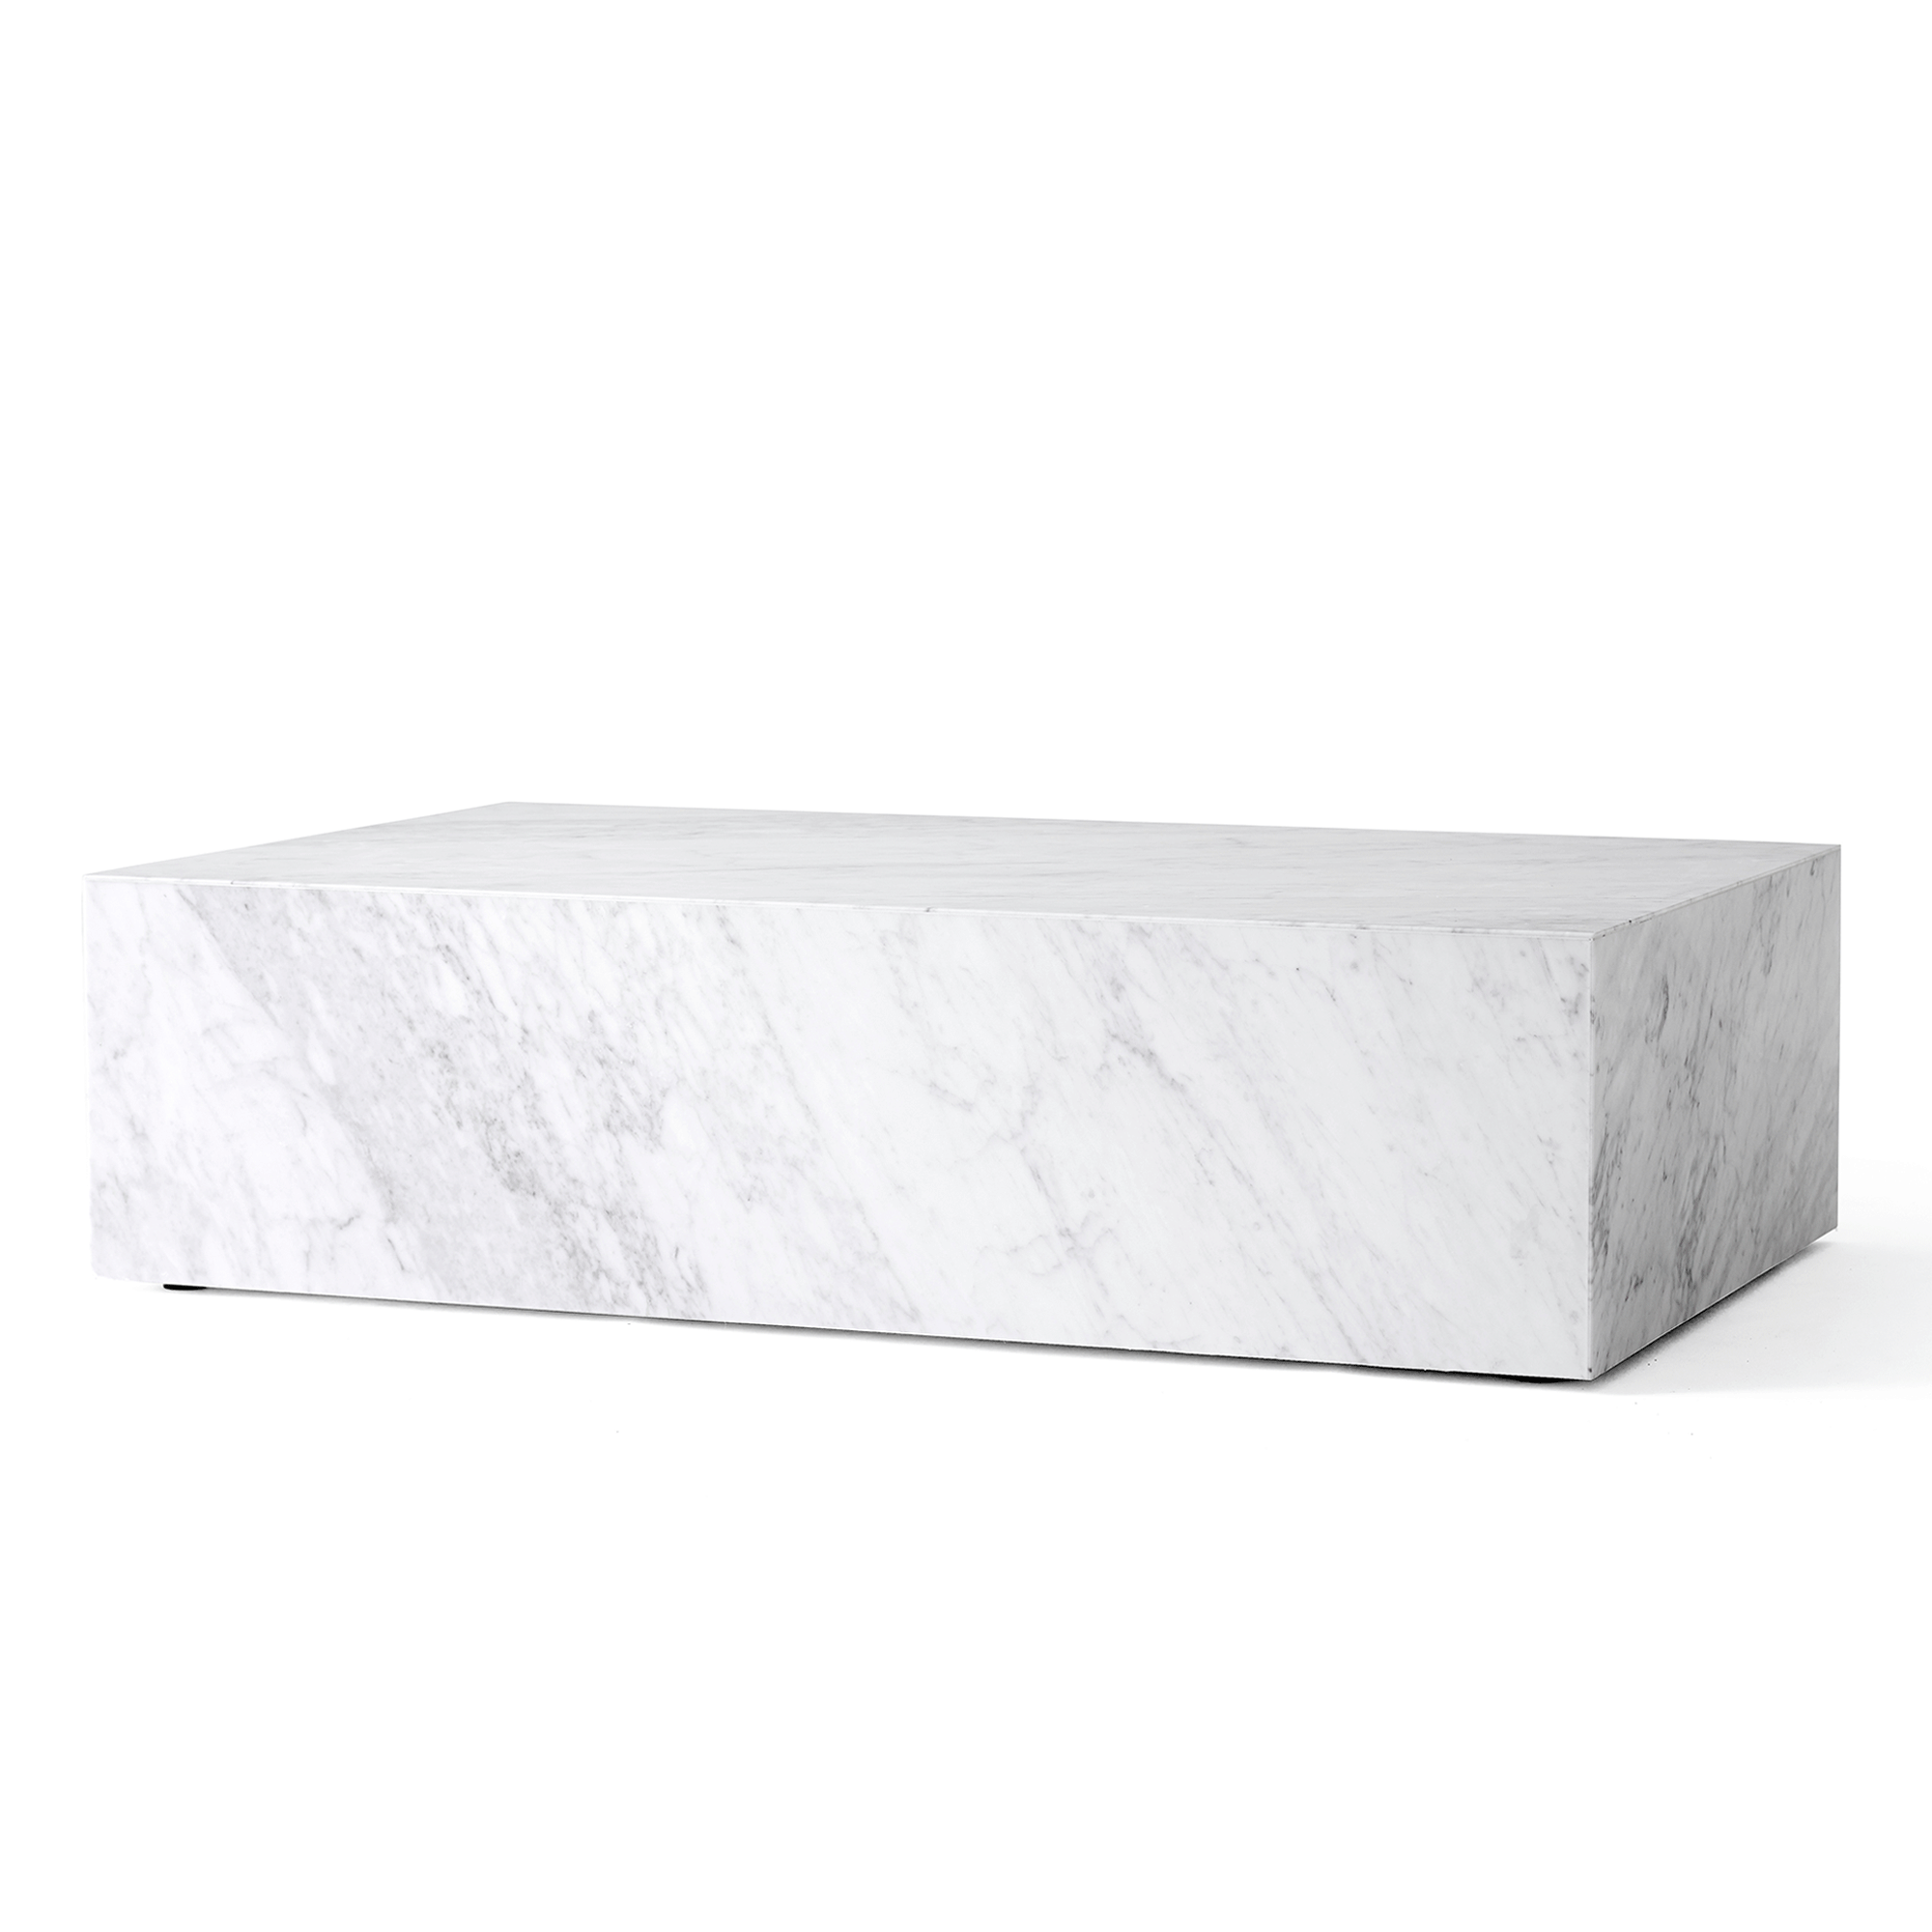 MENU Plinth Couchtisch Niedrig Carrara Marmor